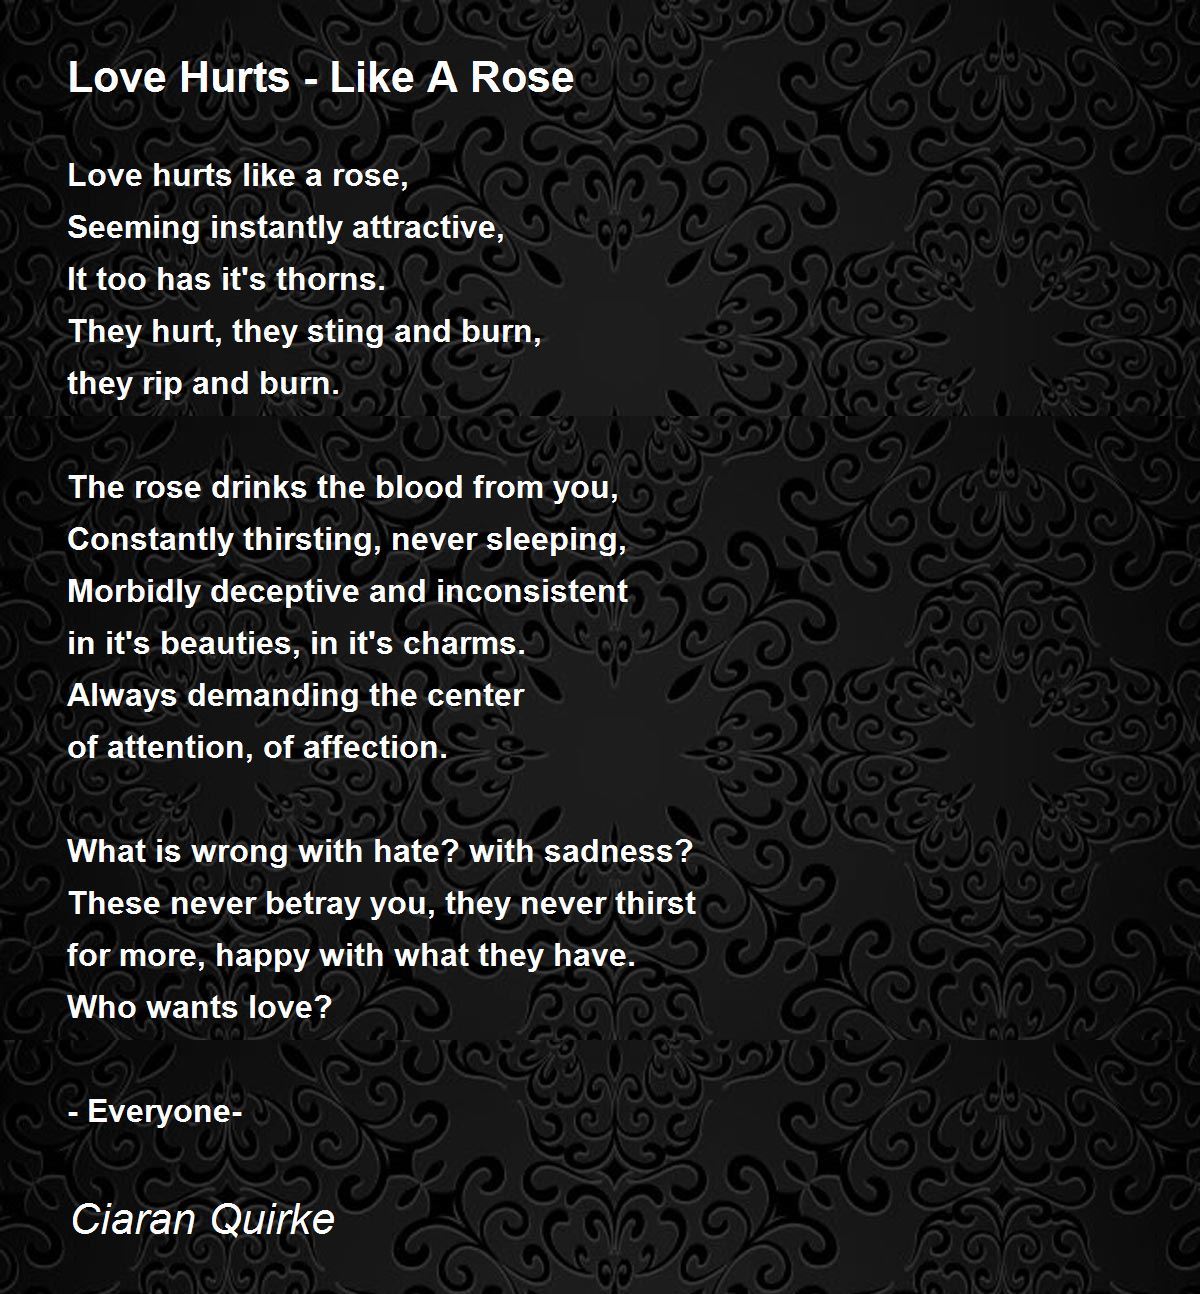 Love Hurts - Like A Rose - Love Hurts - Like A Rose Poem by Ciaran ...